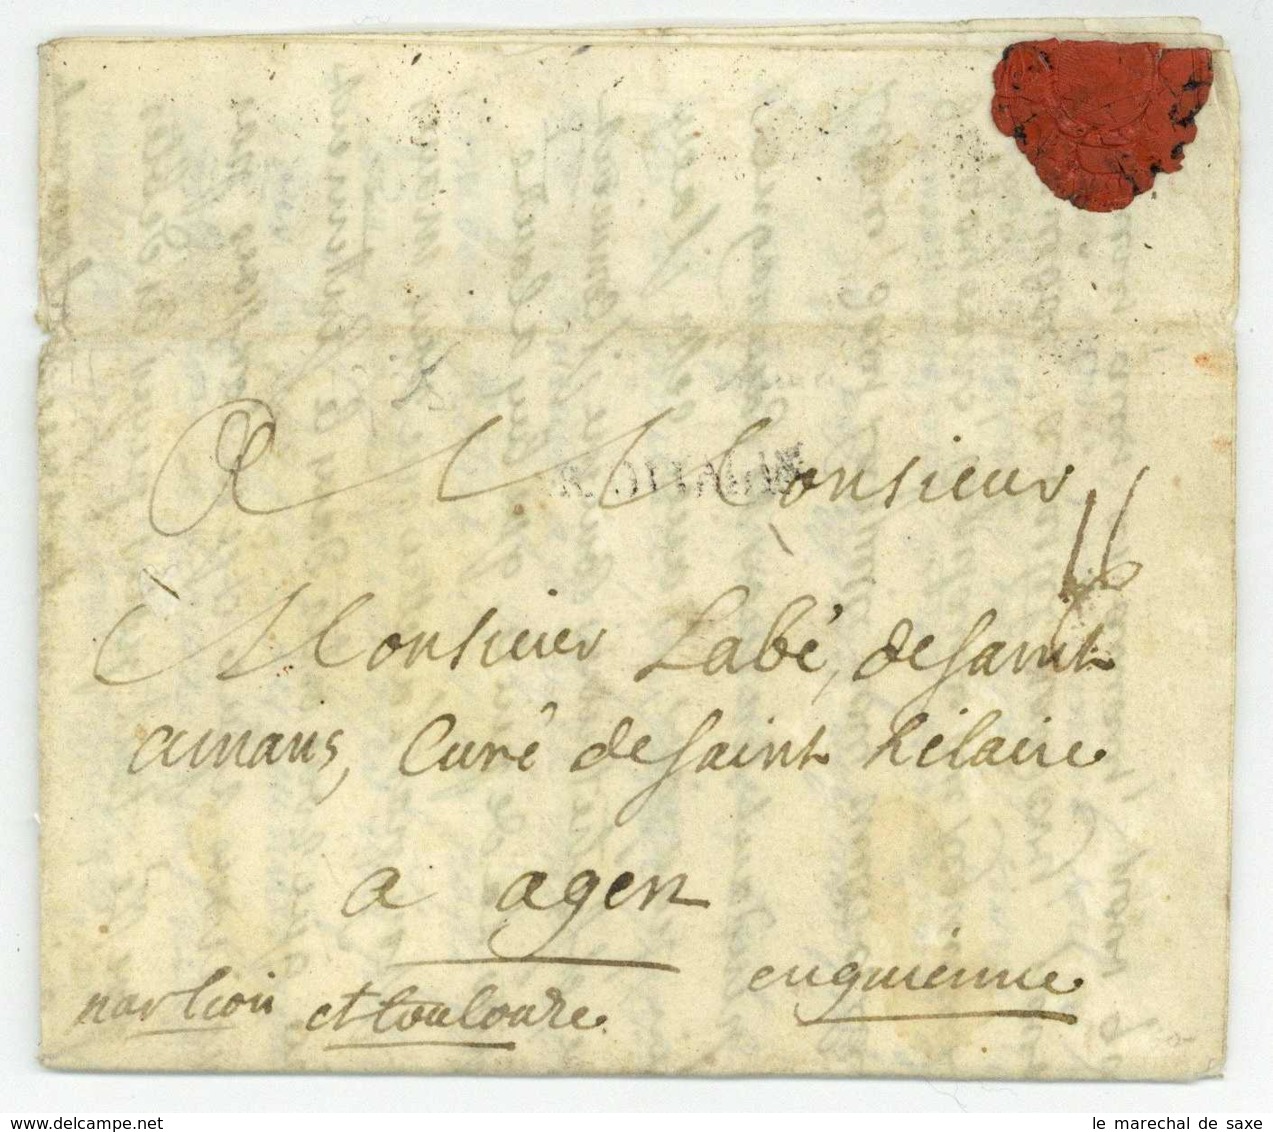 AR D'ITALIE 1735 Mariana Mantovana Montesquiou Regiment Medoc Agen Guerre De Succession De Pologne Tirol Mantova - Army Postmarks (before 1900)